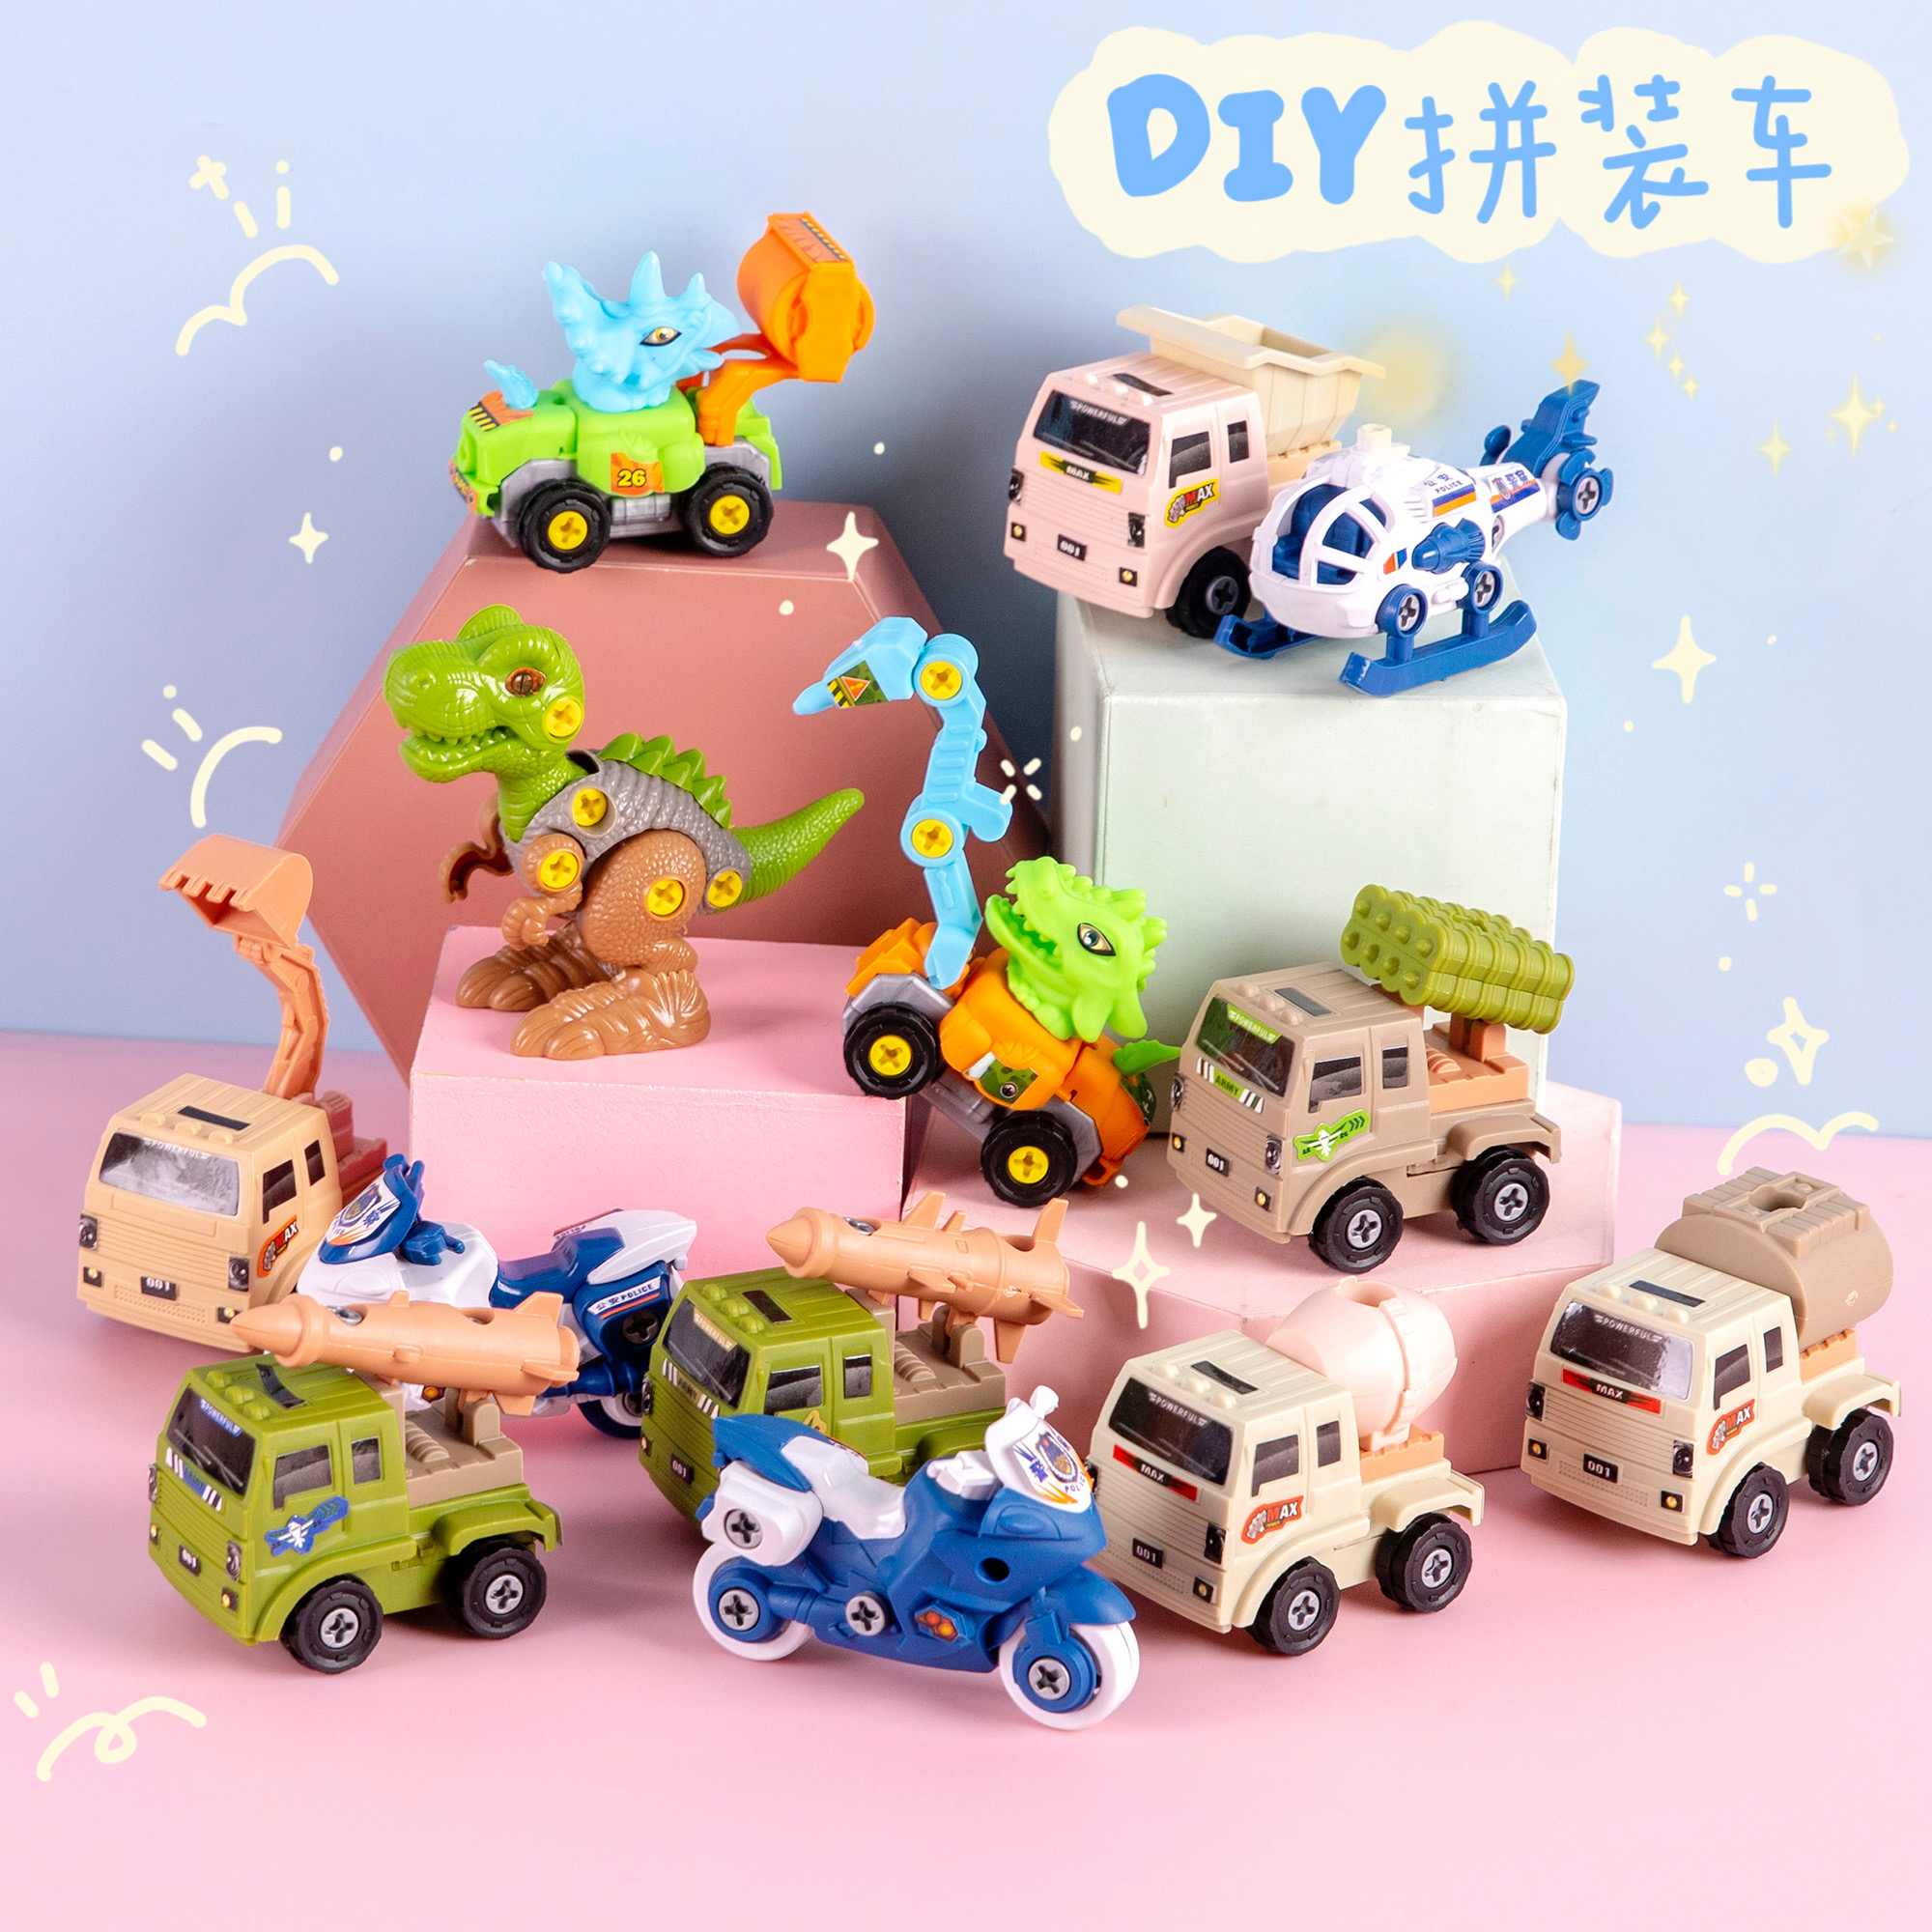 儿童拼装玩具车幼儿园小礼品全班开学分享礼物奖励小学生儿童奖品